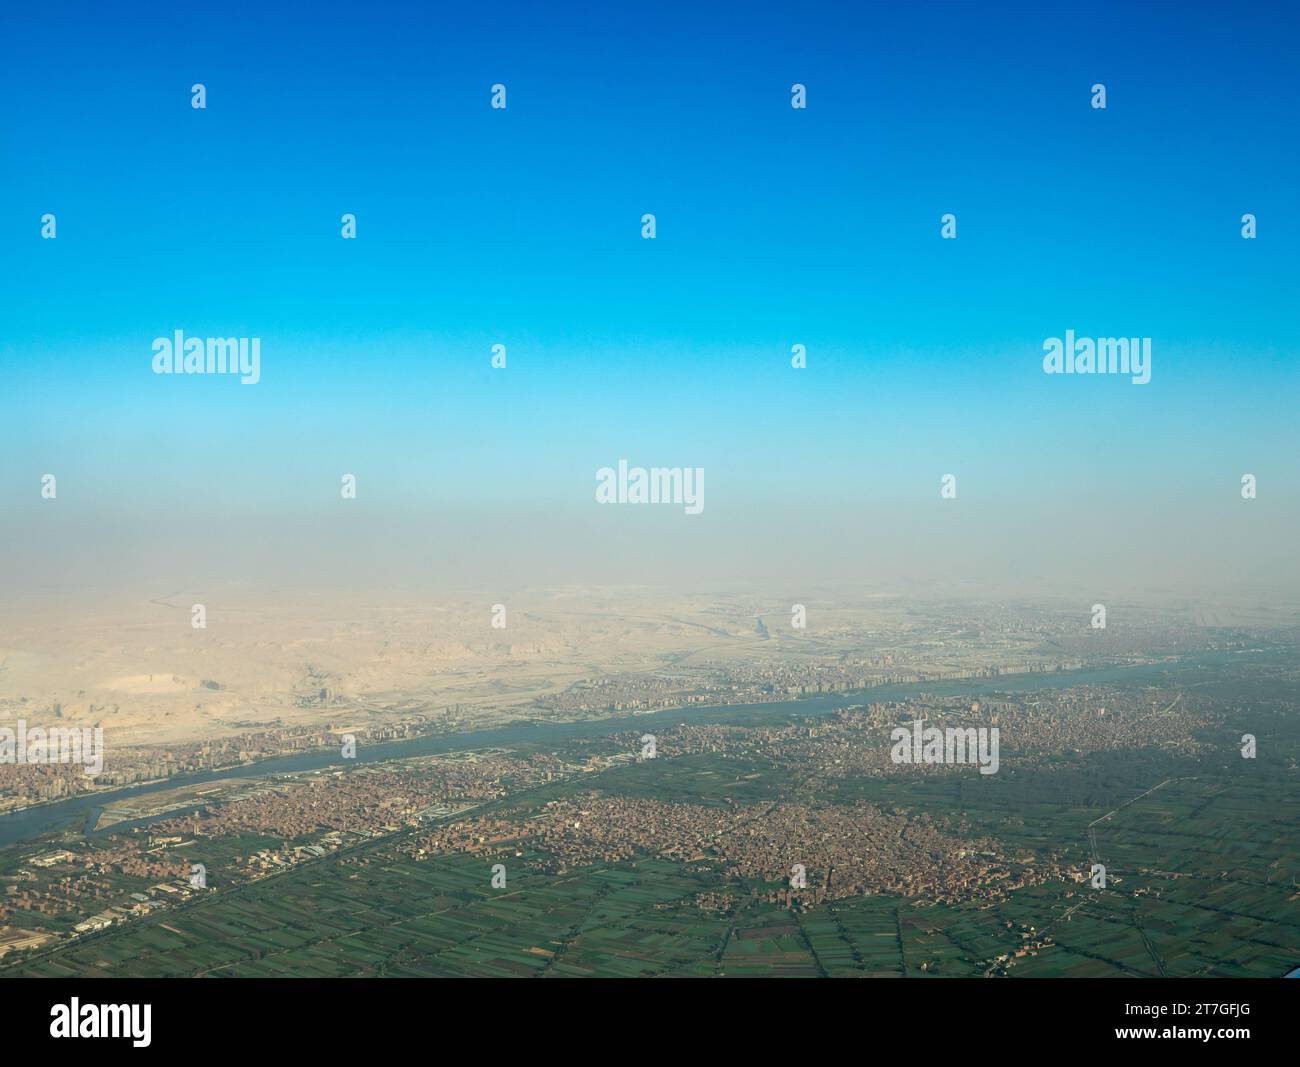 Vista aerea della fertile valle con fattorie e città lungo le rive del Nilo Foto Stock